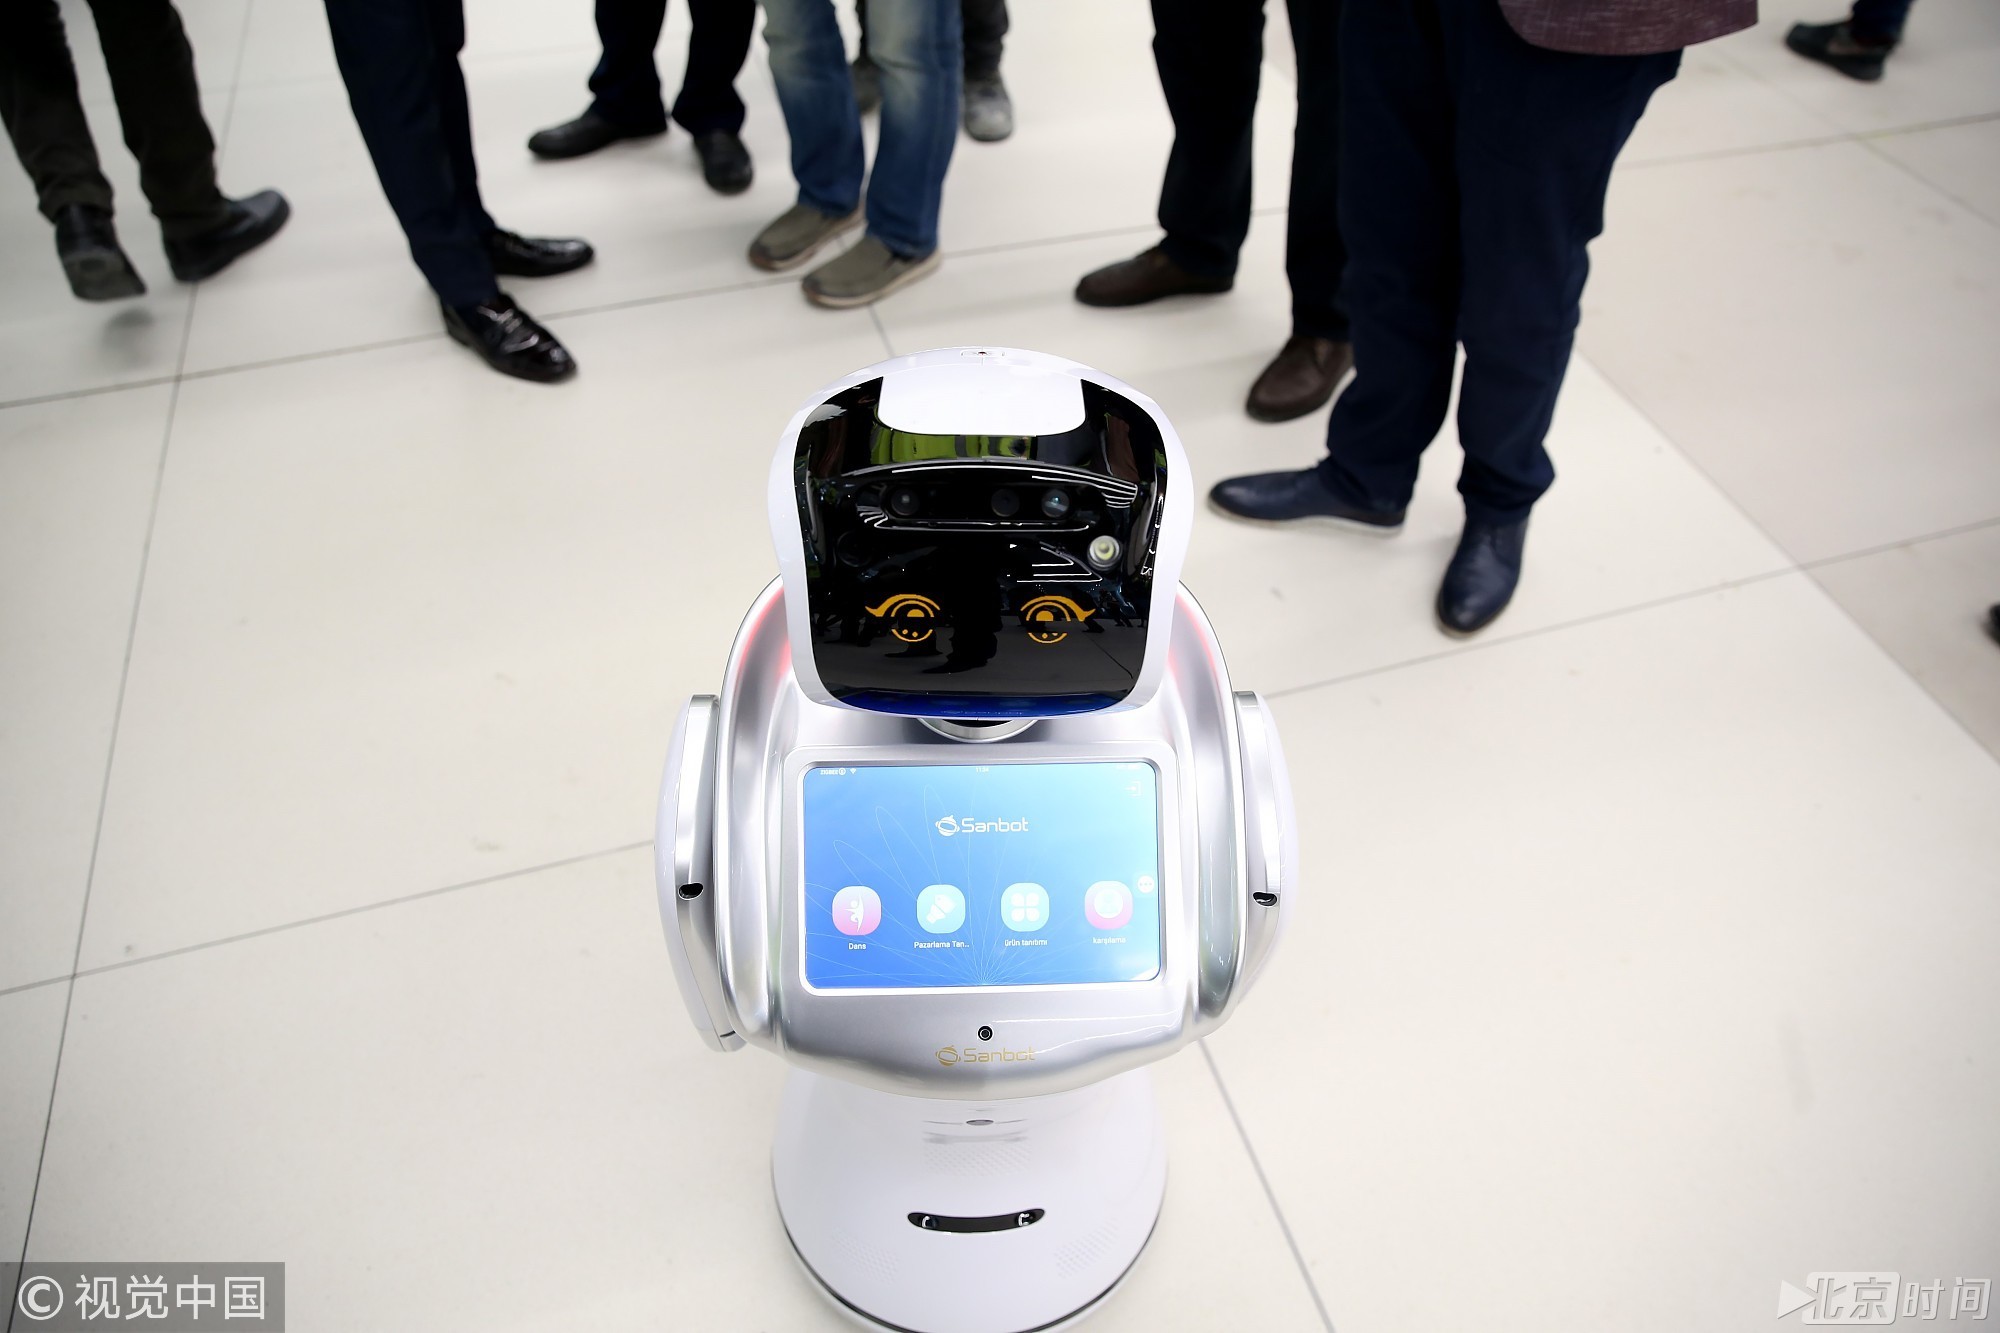 土耳其伊斯坦布尔新机场施工 机器人上岗给乘客指路